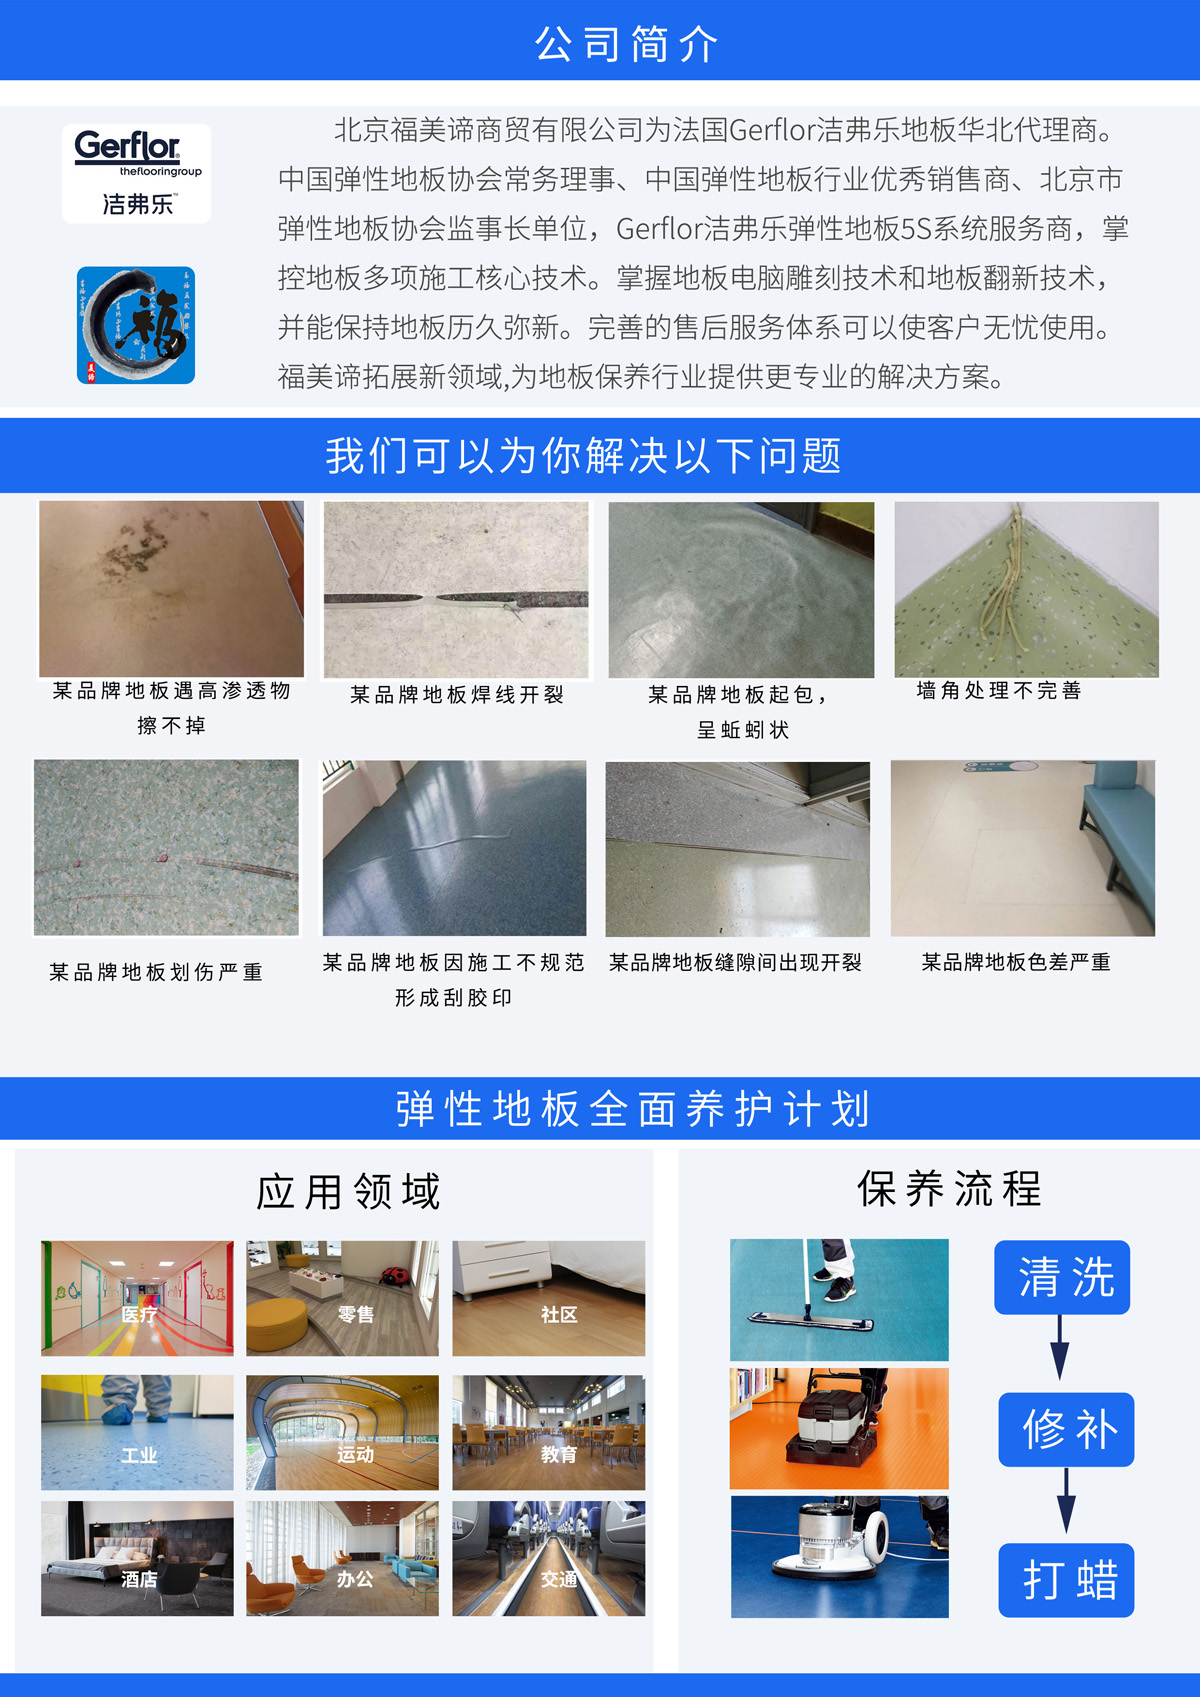 北京地板维修、保养、打蜡、打磨、翻新、修复、抛光、修补